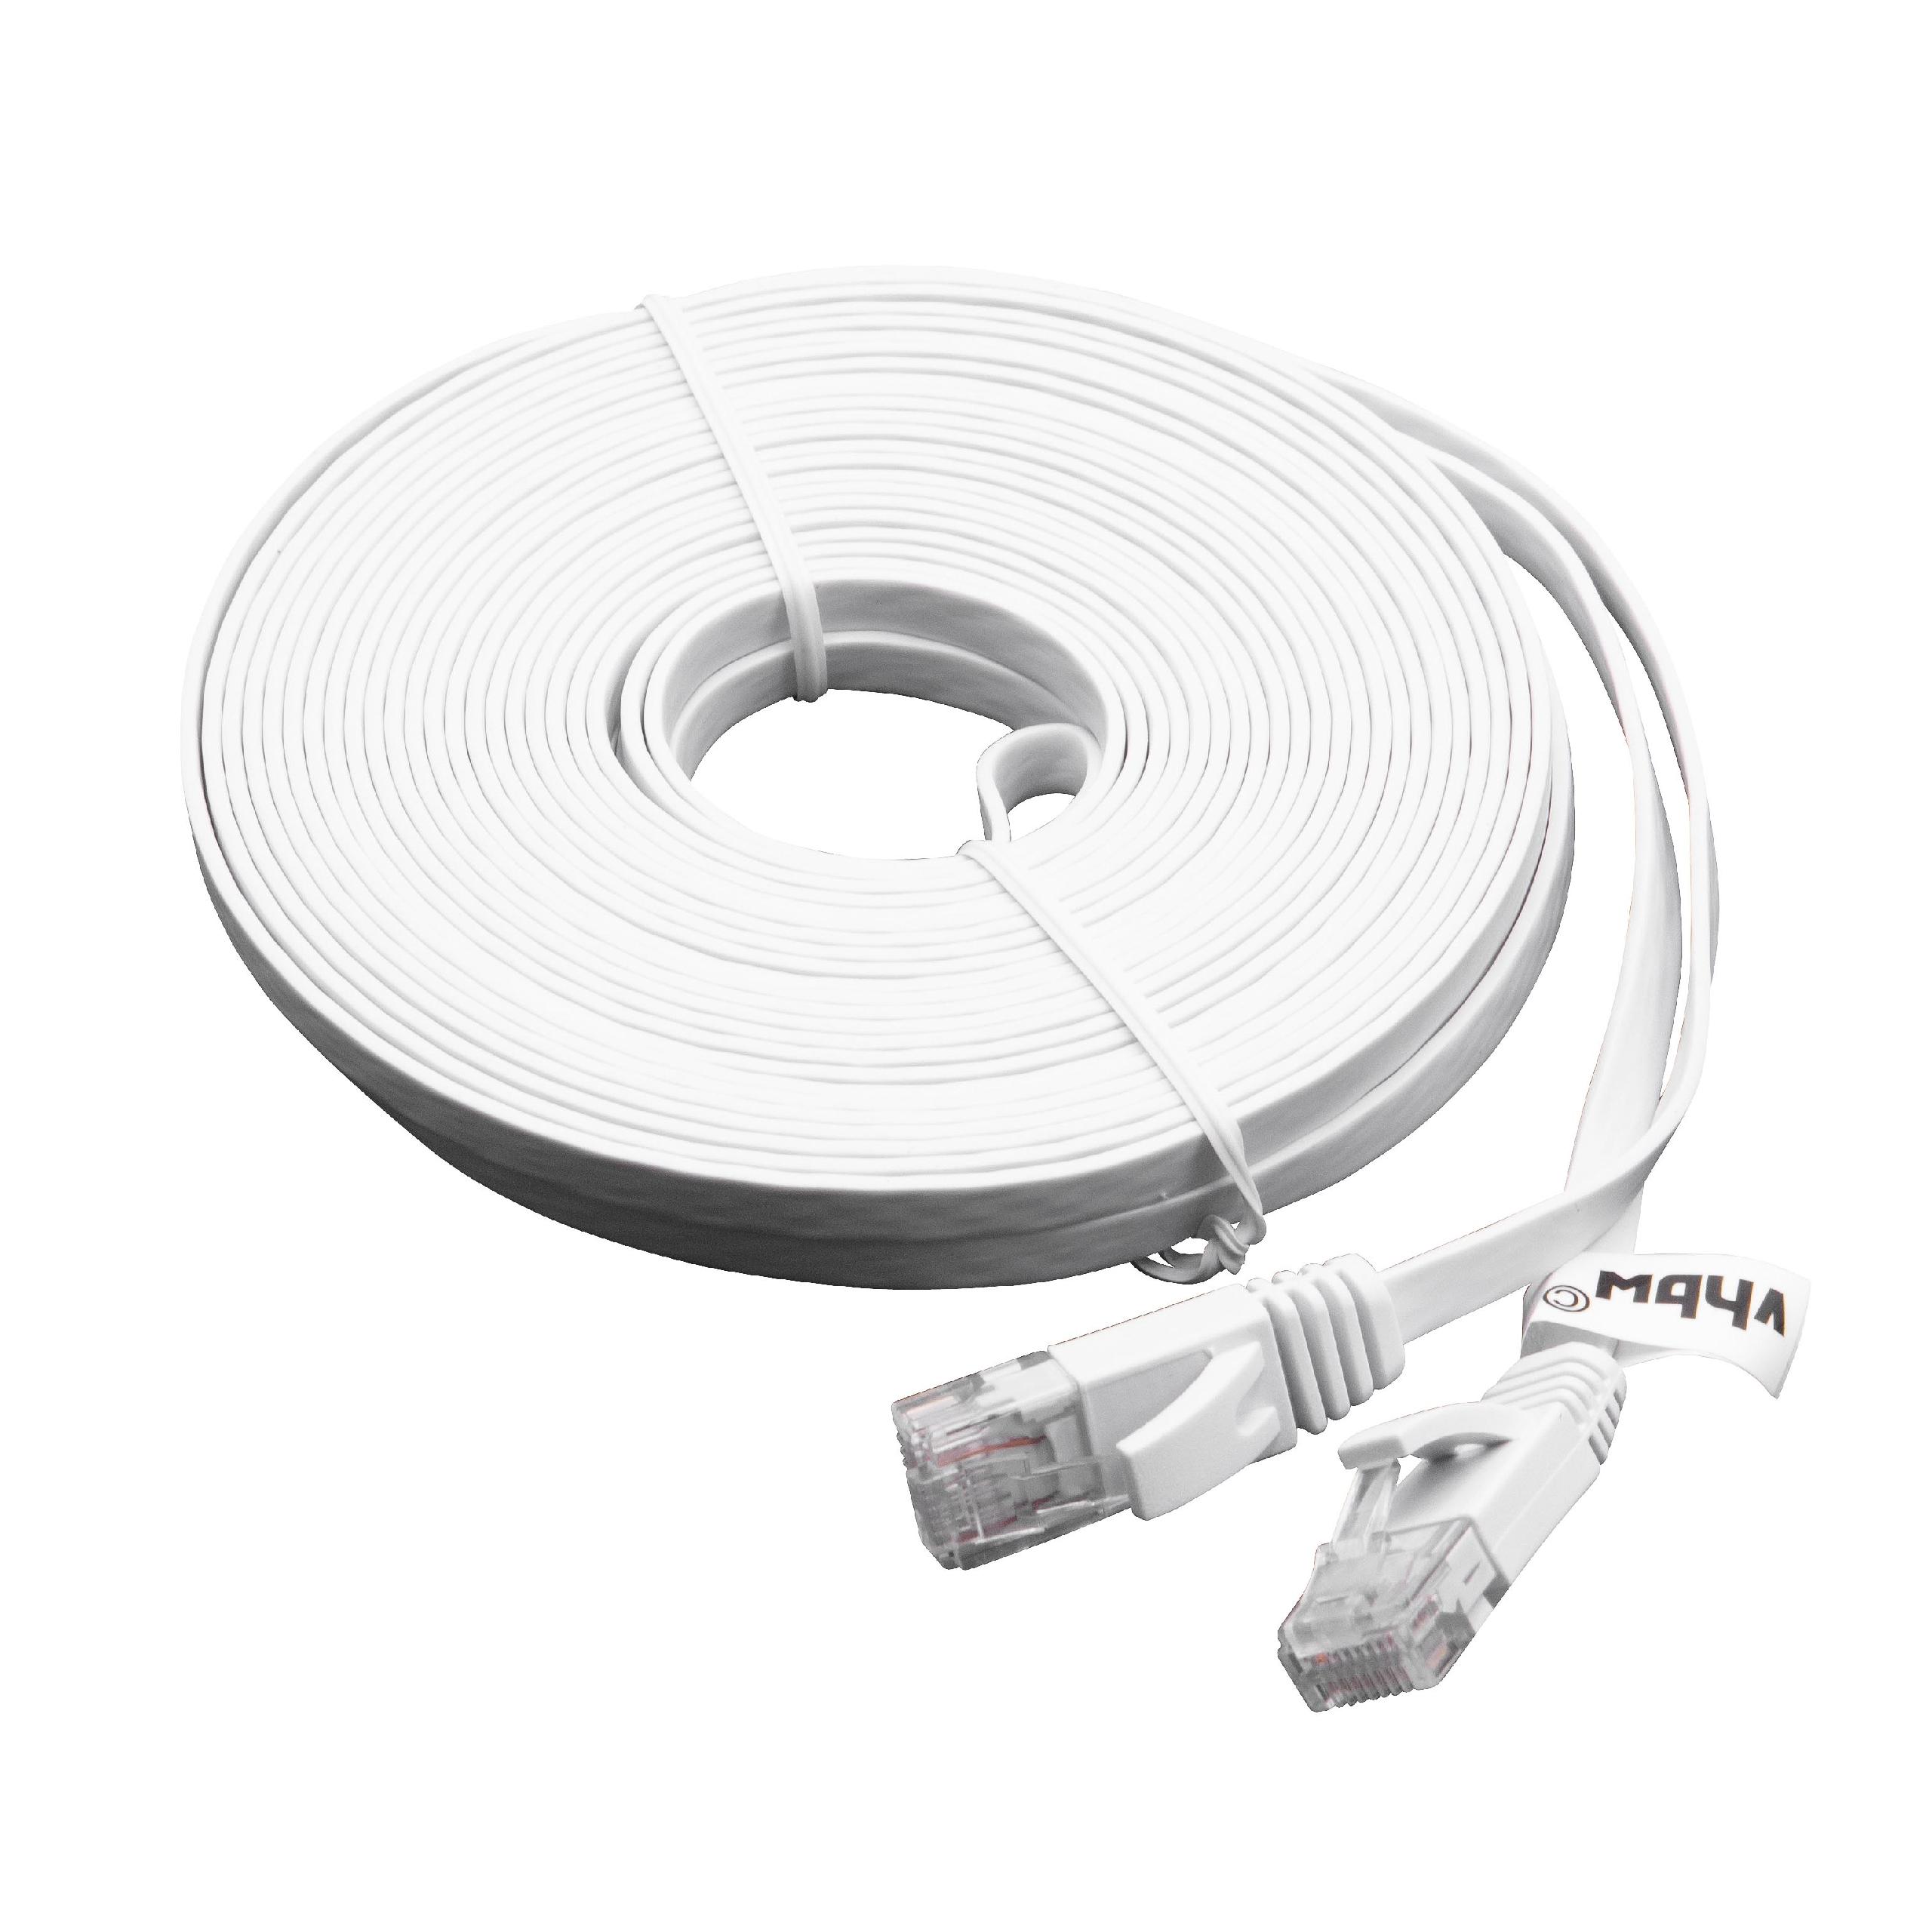 Cable de red de Ethernet, LAN, cable patch Cat6 10m blanco cable plano de tendido